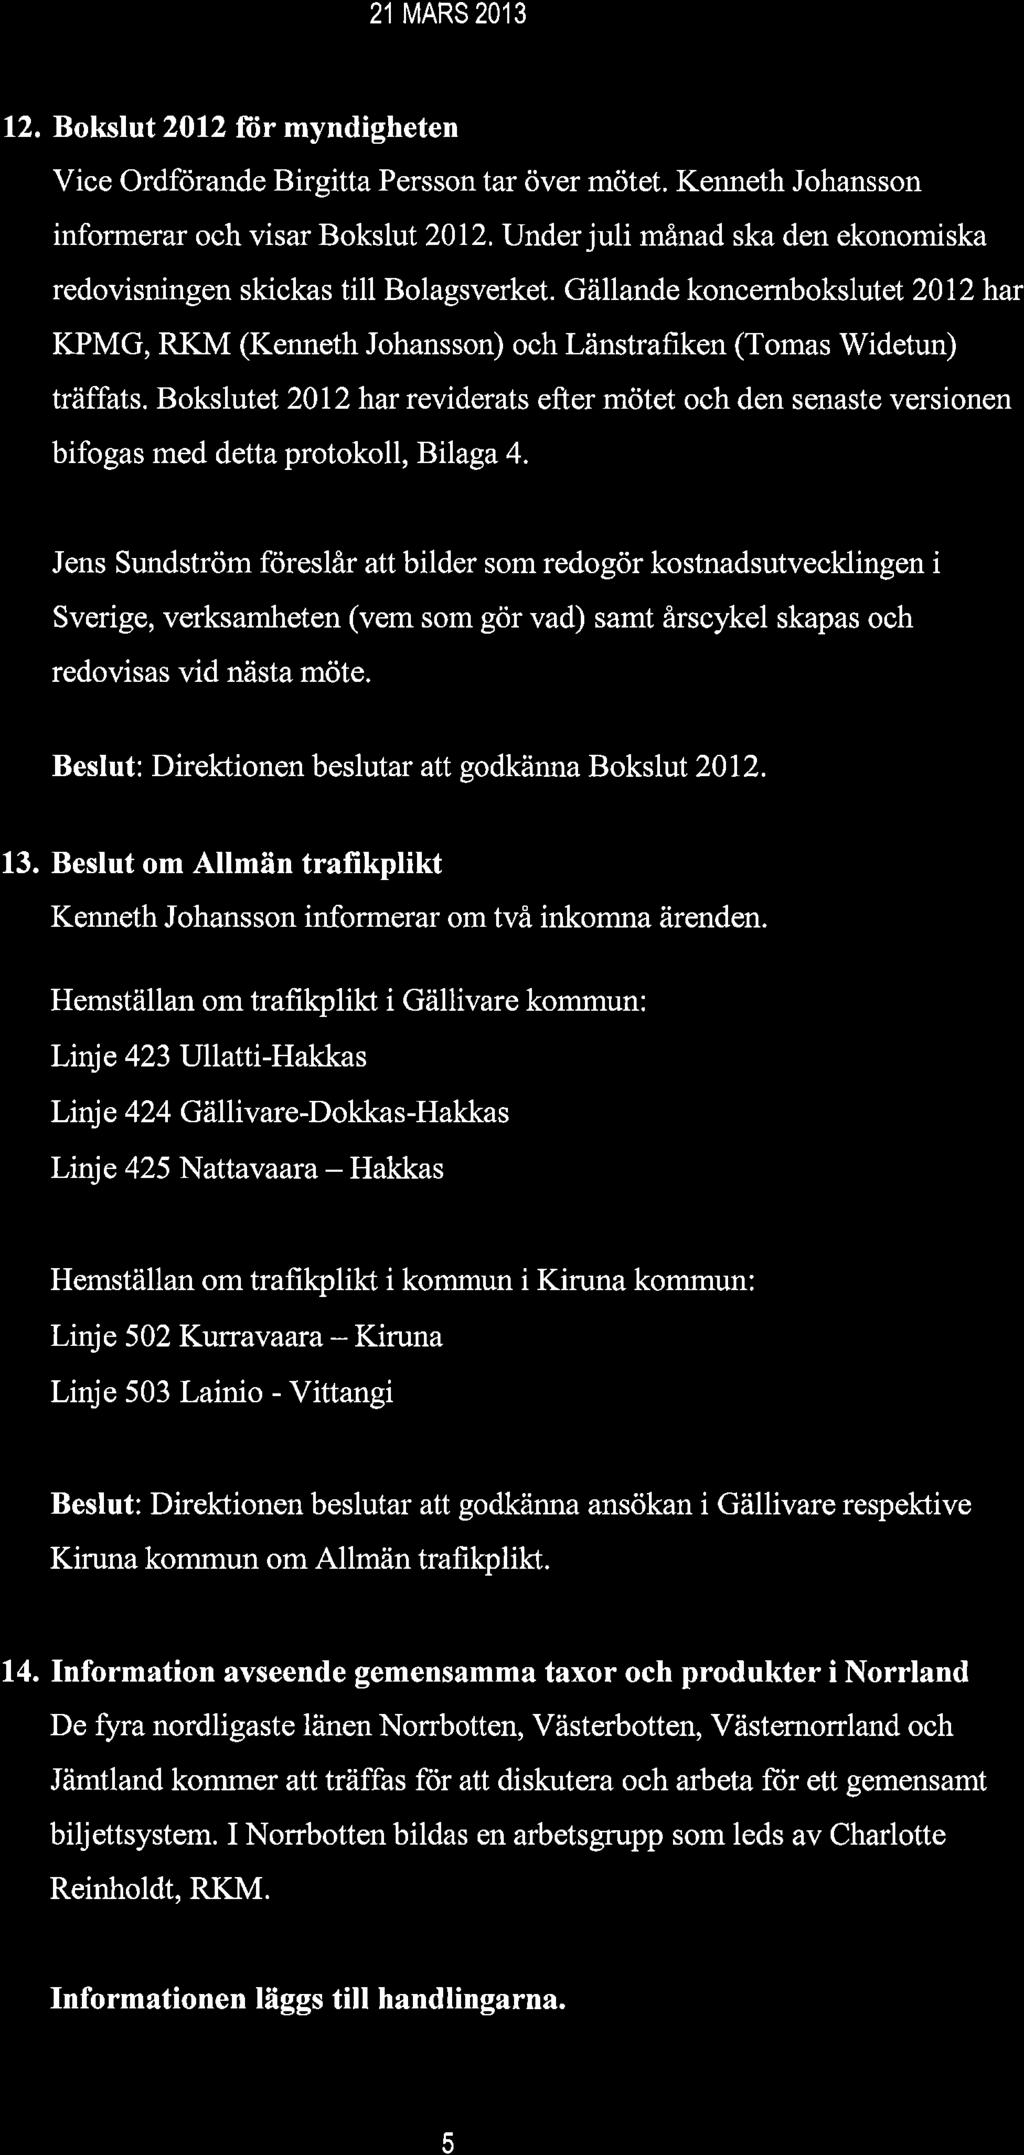 21 MARS2O13 12. Bokslut 2012 for myndigheten Vice Ordforande Birgitta Persson tar över mötet. Kenneth Johansson informerar och visar Bokslut 2012.